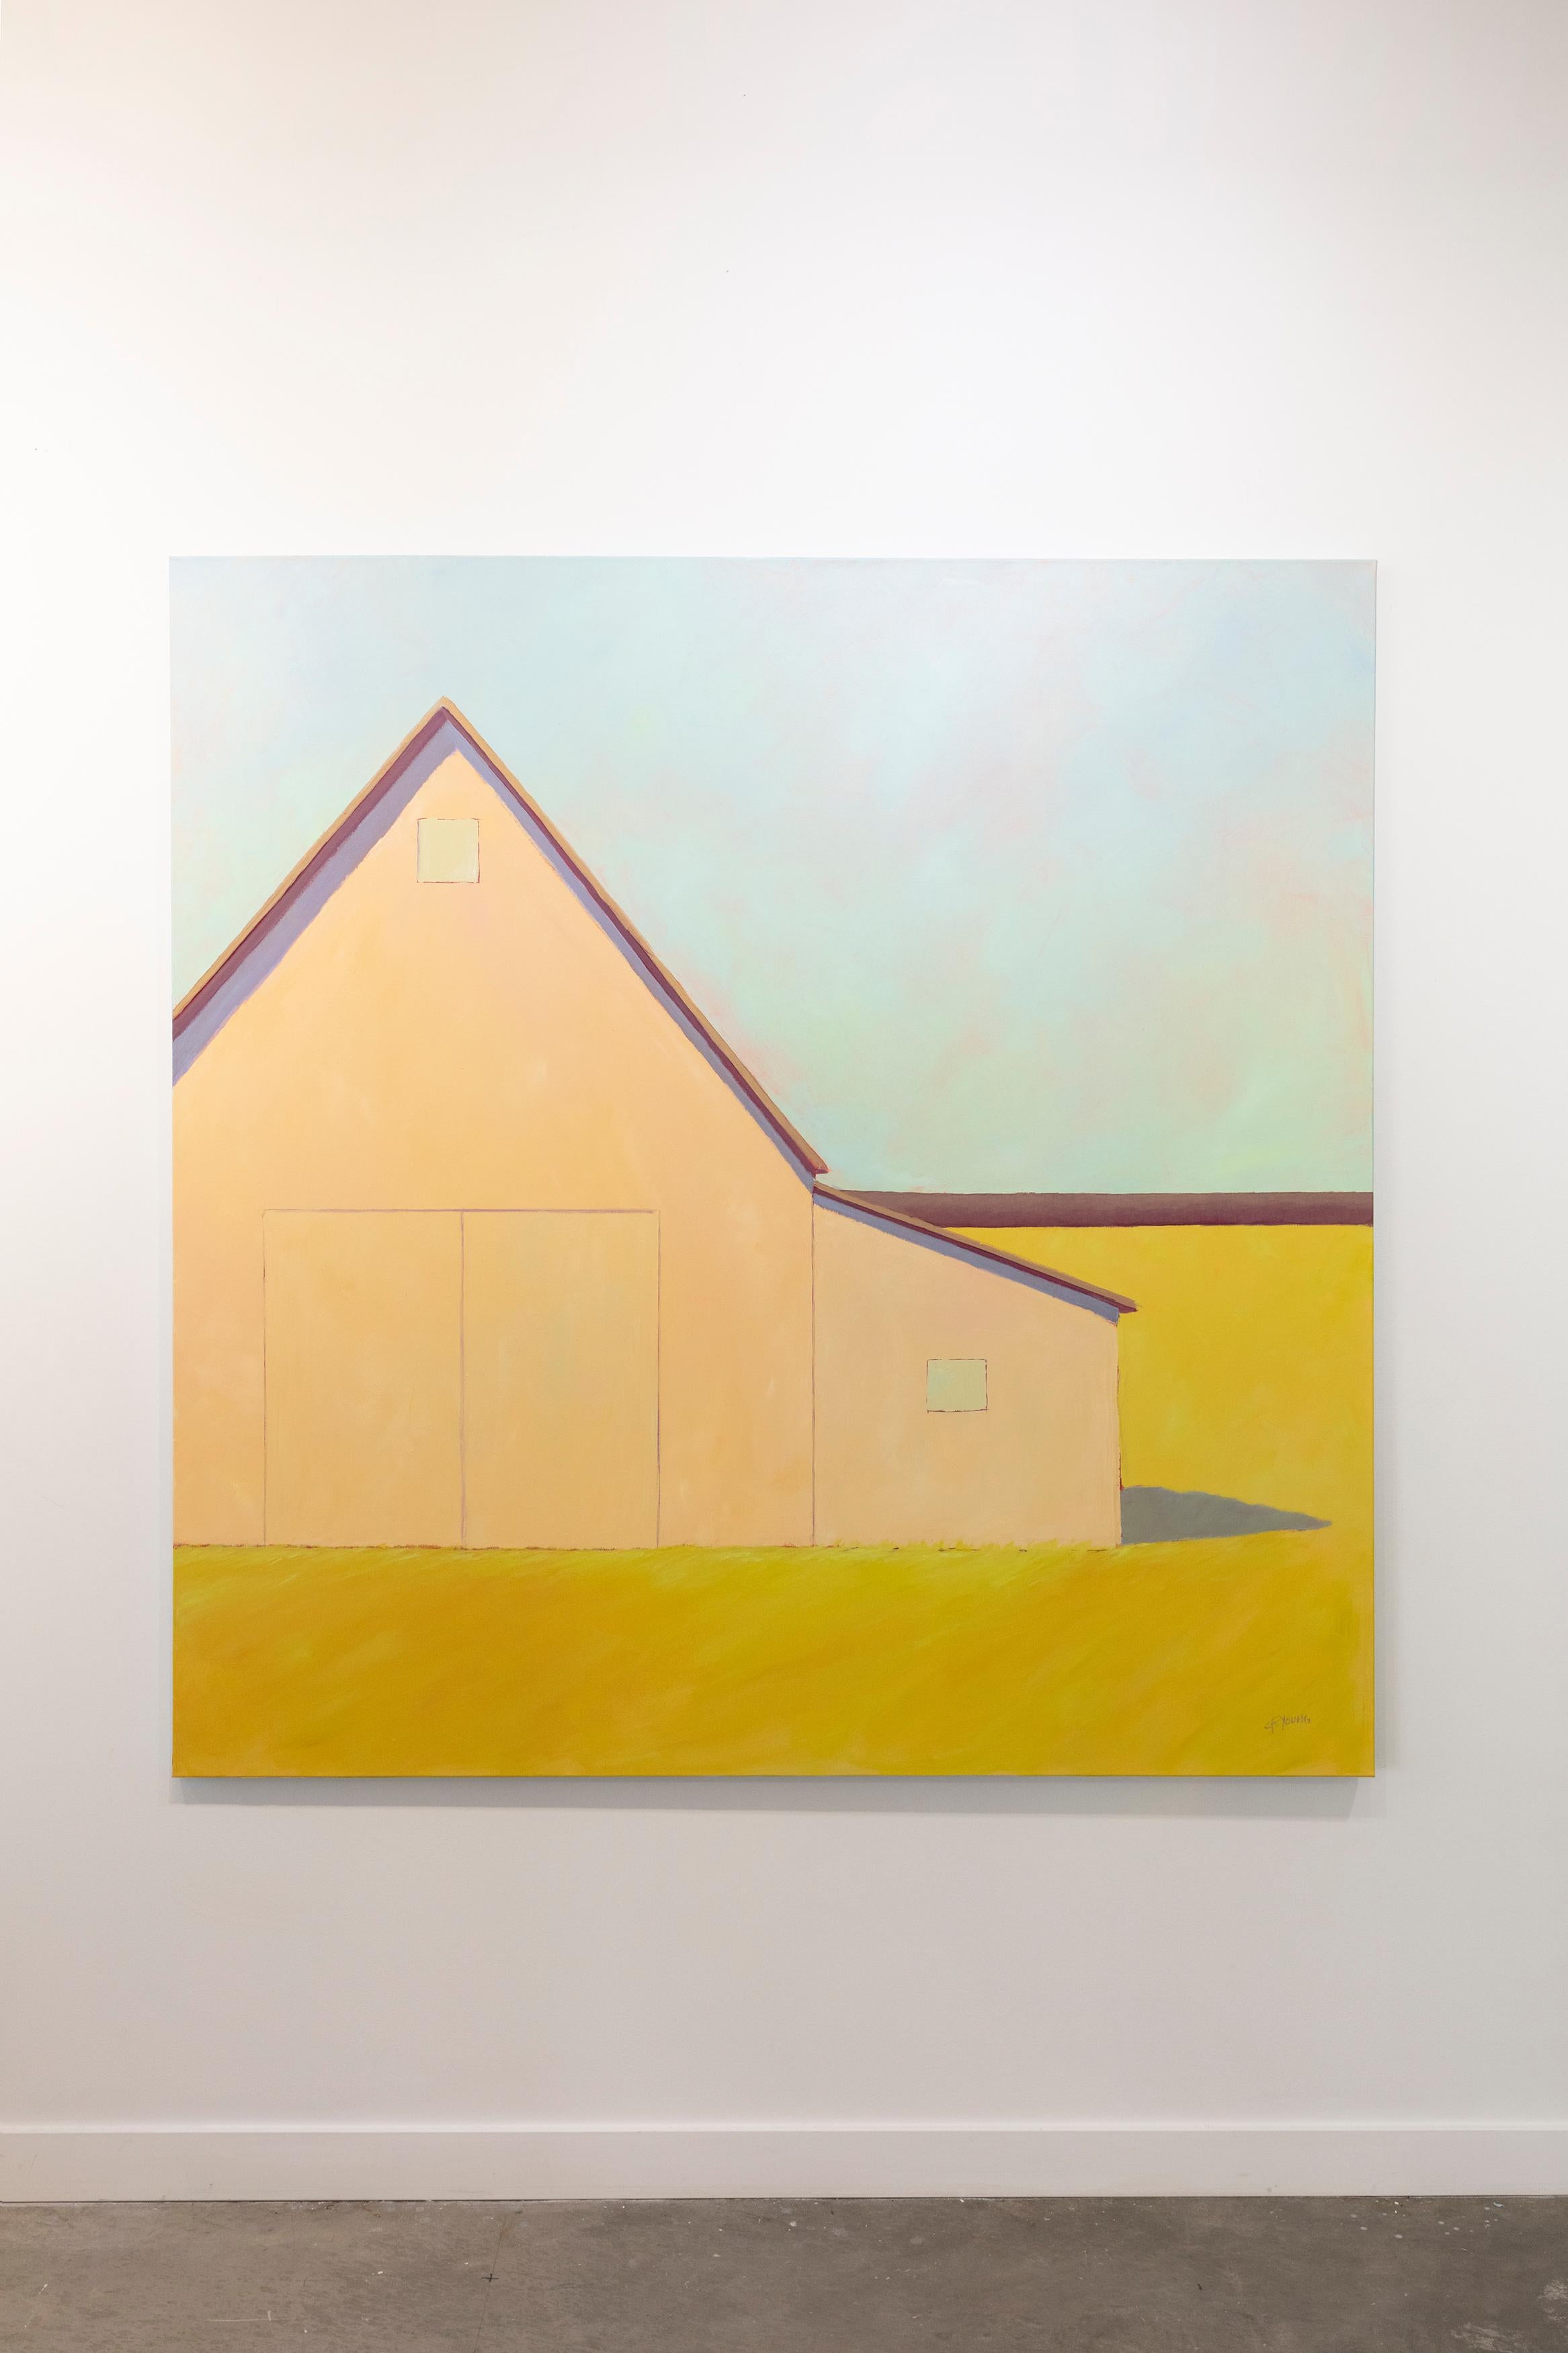 Dieses zeitgenössische Landschaftsgemälde von Carol Young zeigt eine ländliche Szene mit einem scheunenartigen Gebäude in einem offenen Feld. Die hellen, warmen Gelb- und Orangetöne der Scheune und des Bodens stehen im Kontrast zu dem kühlen Blau